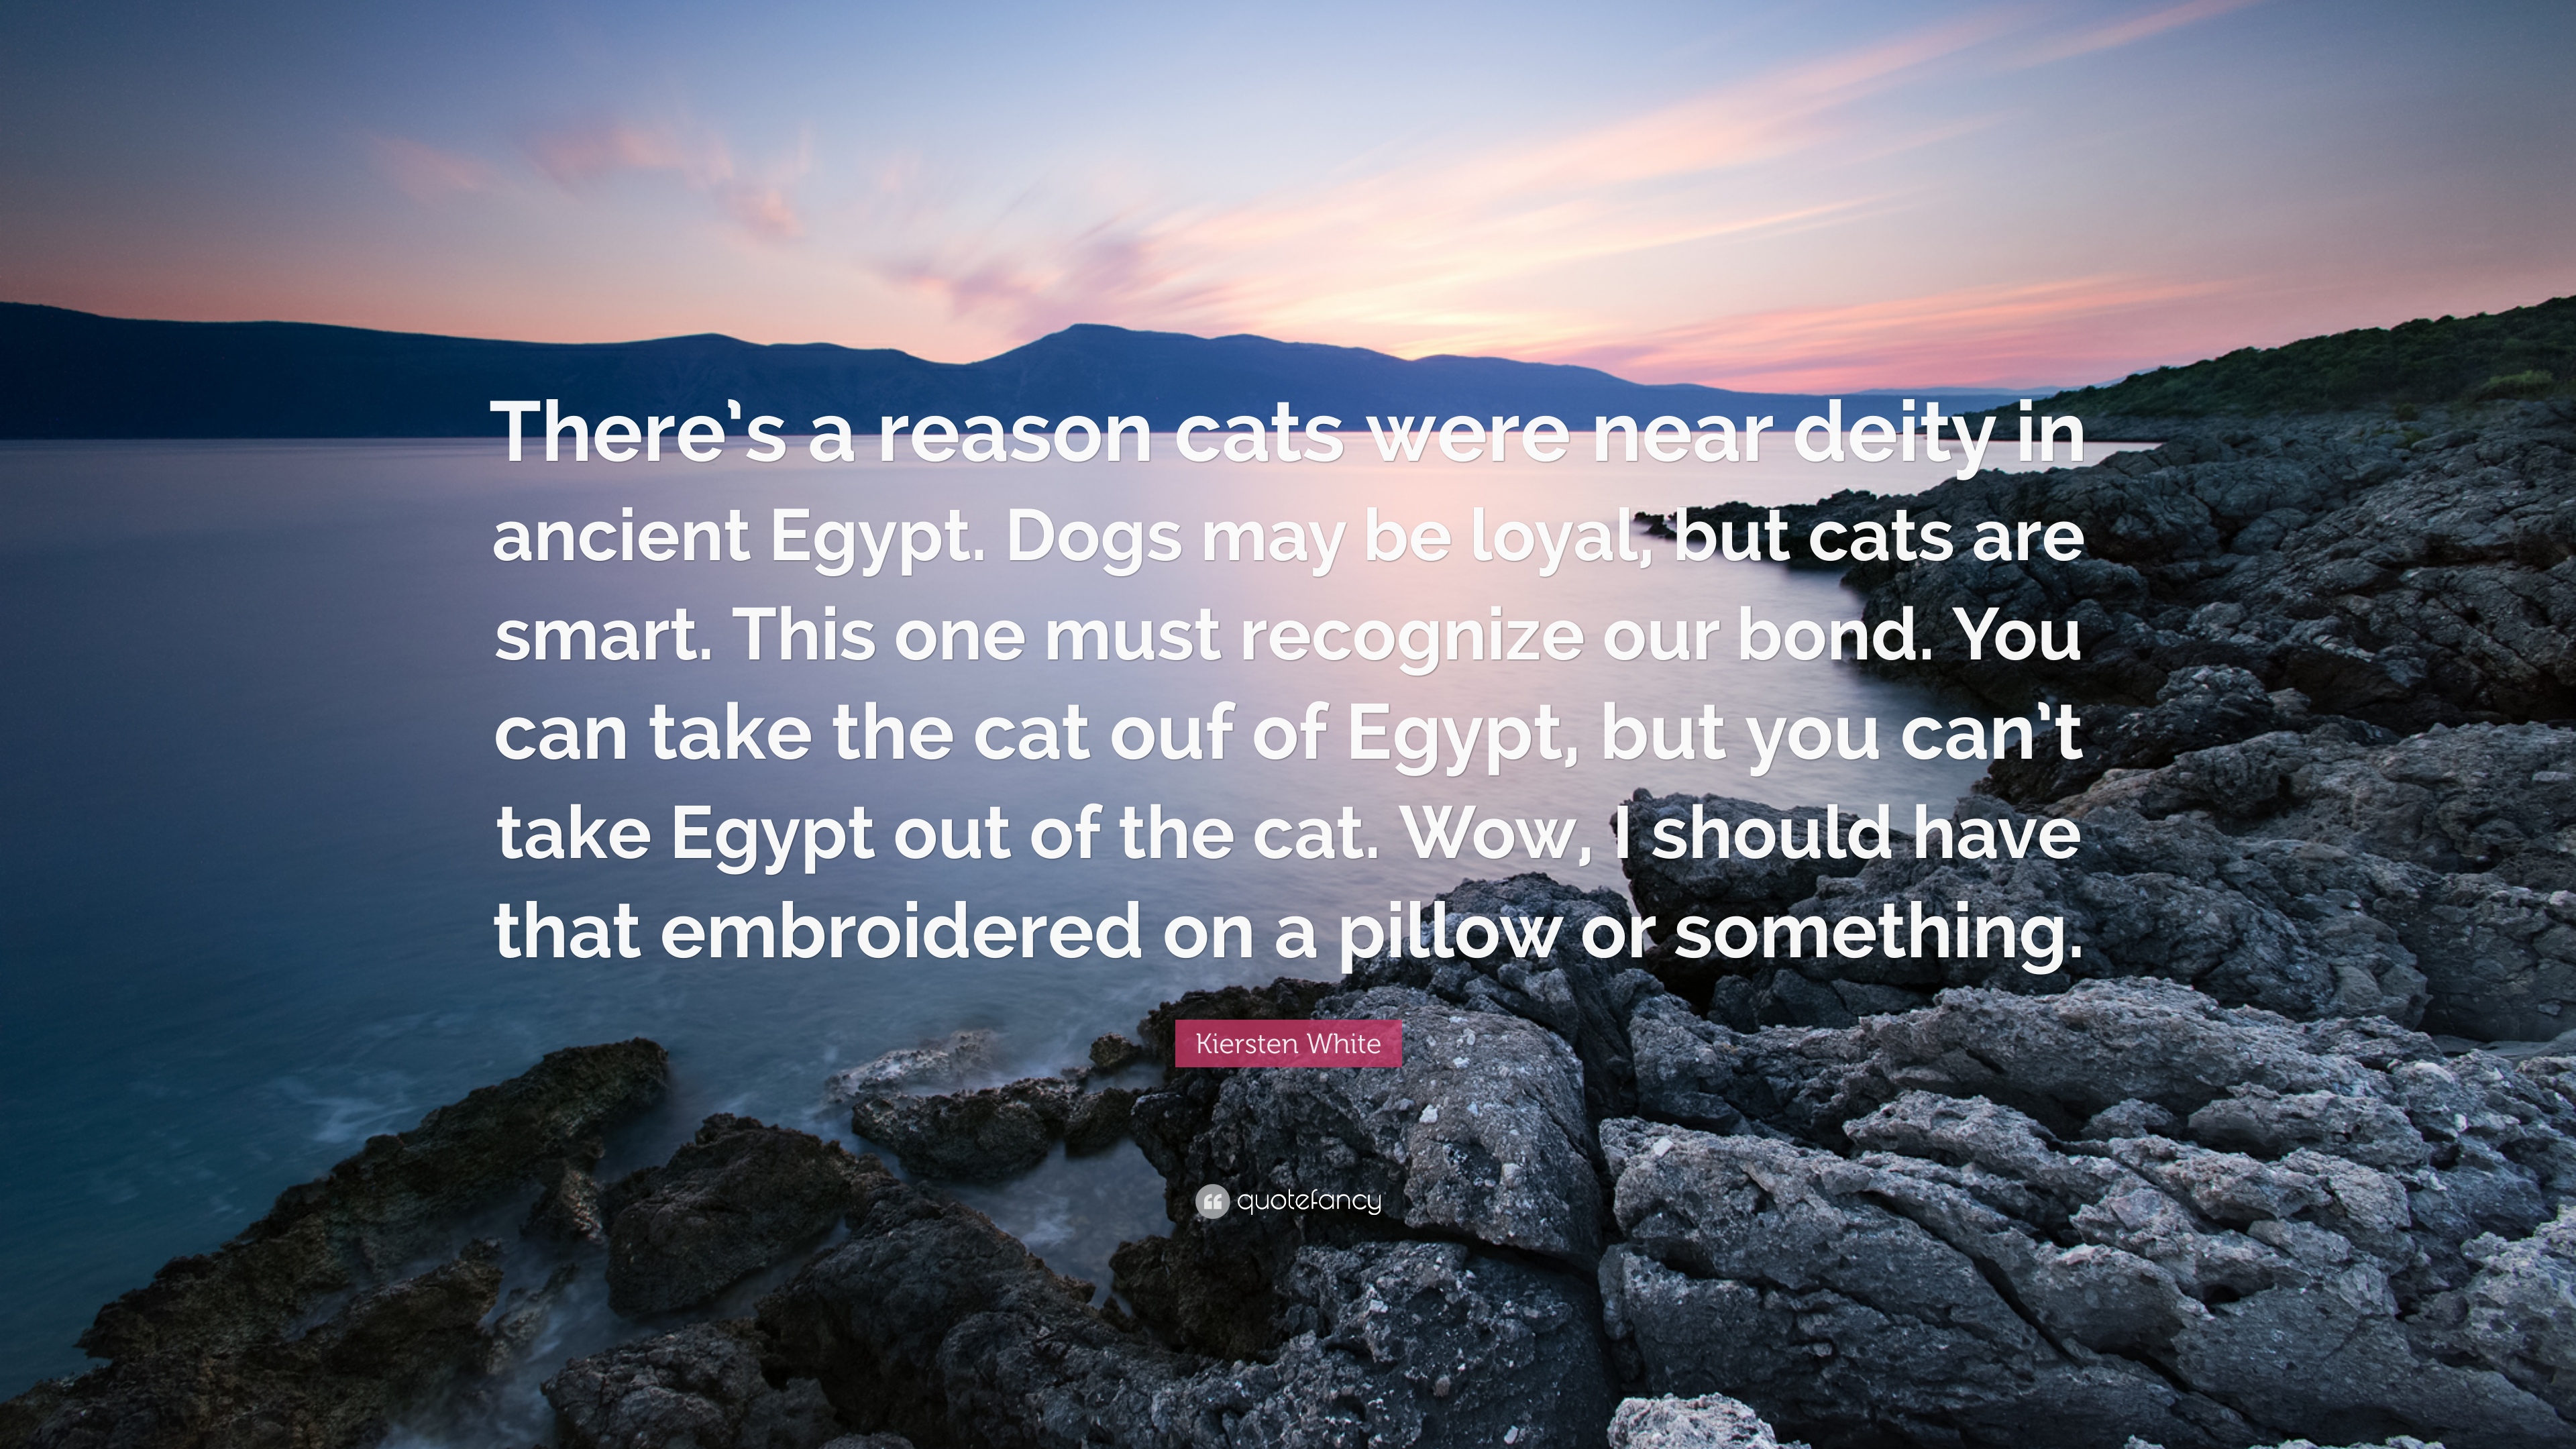 Kiersten White Quote: “There's a reason cats were near deity